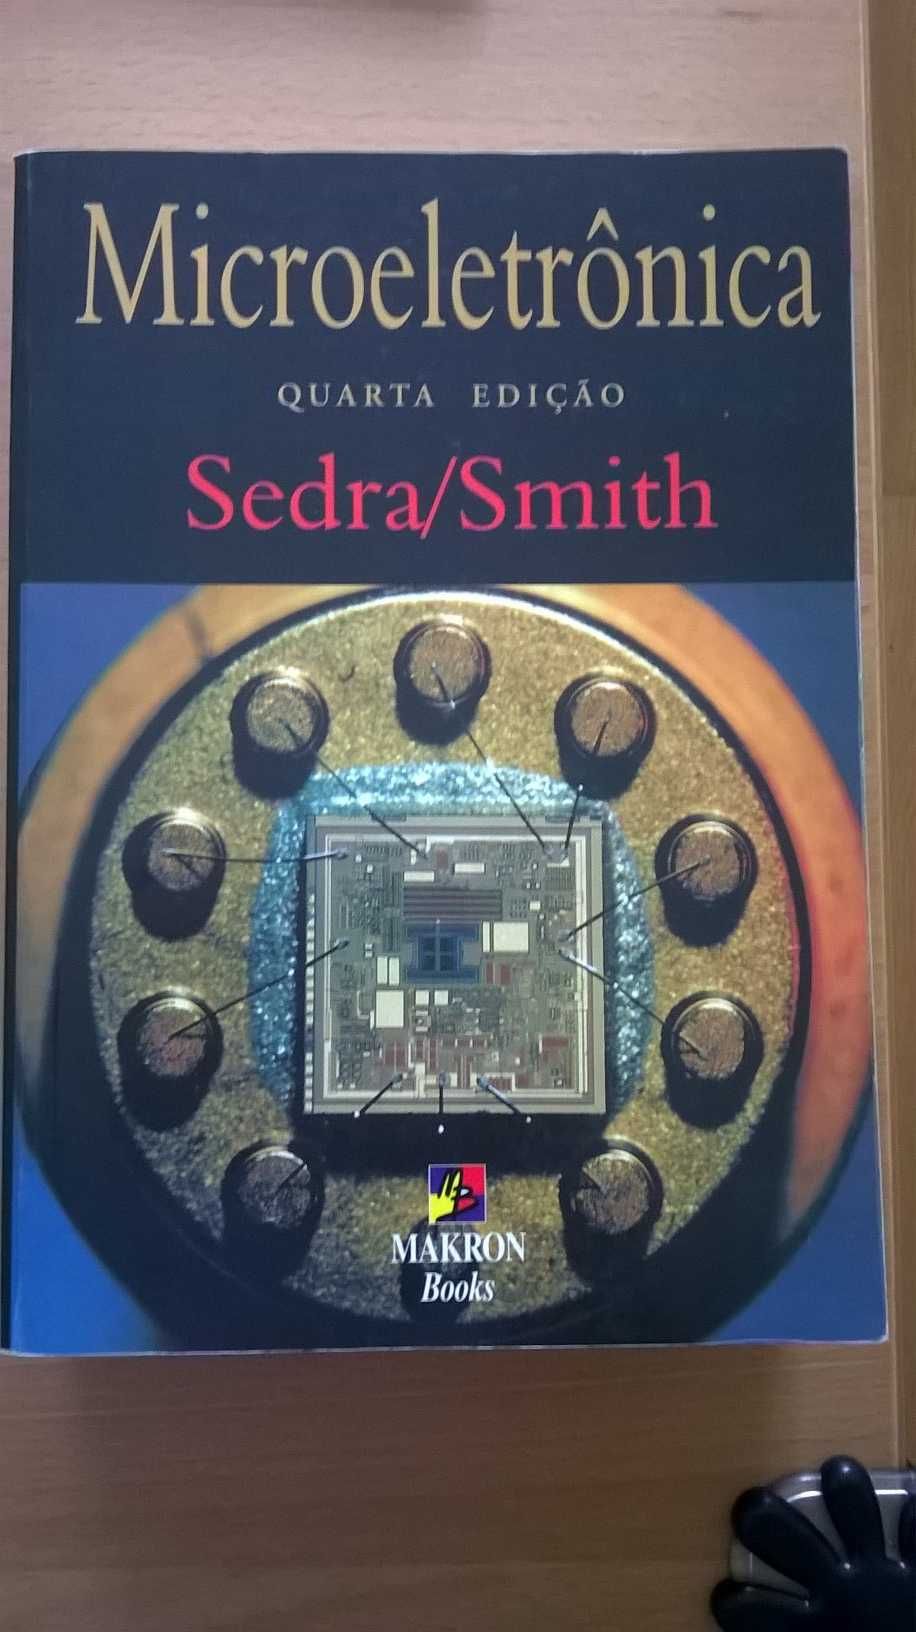 Livro de Microeletronica de Sedra/Smith (engenharia)